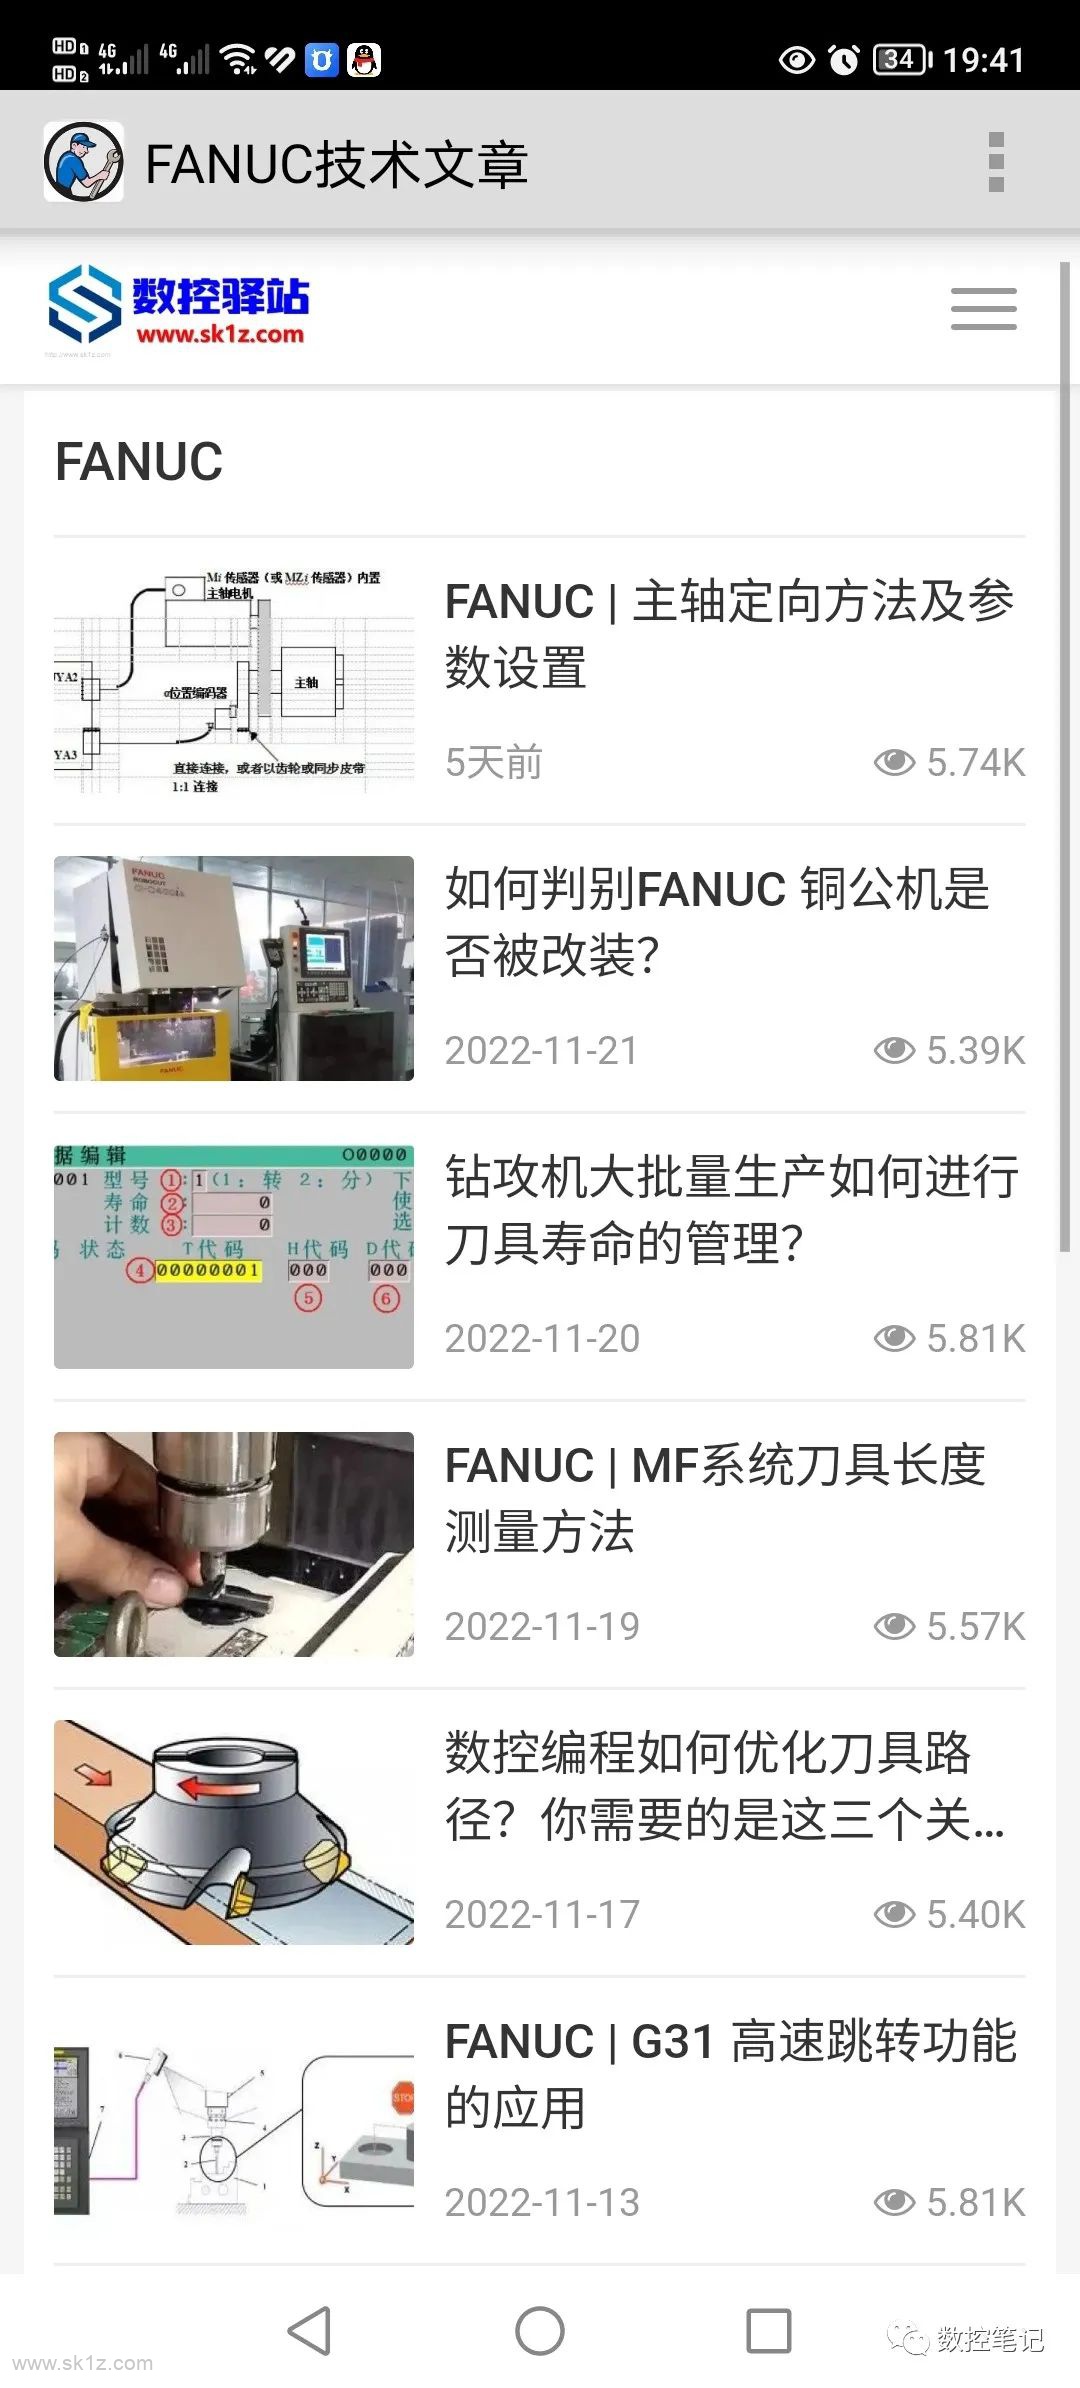 FANUC | 数控系统查询小工具助手